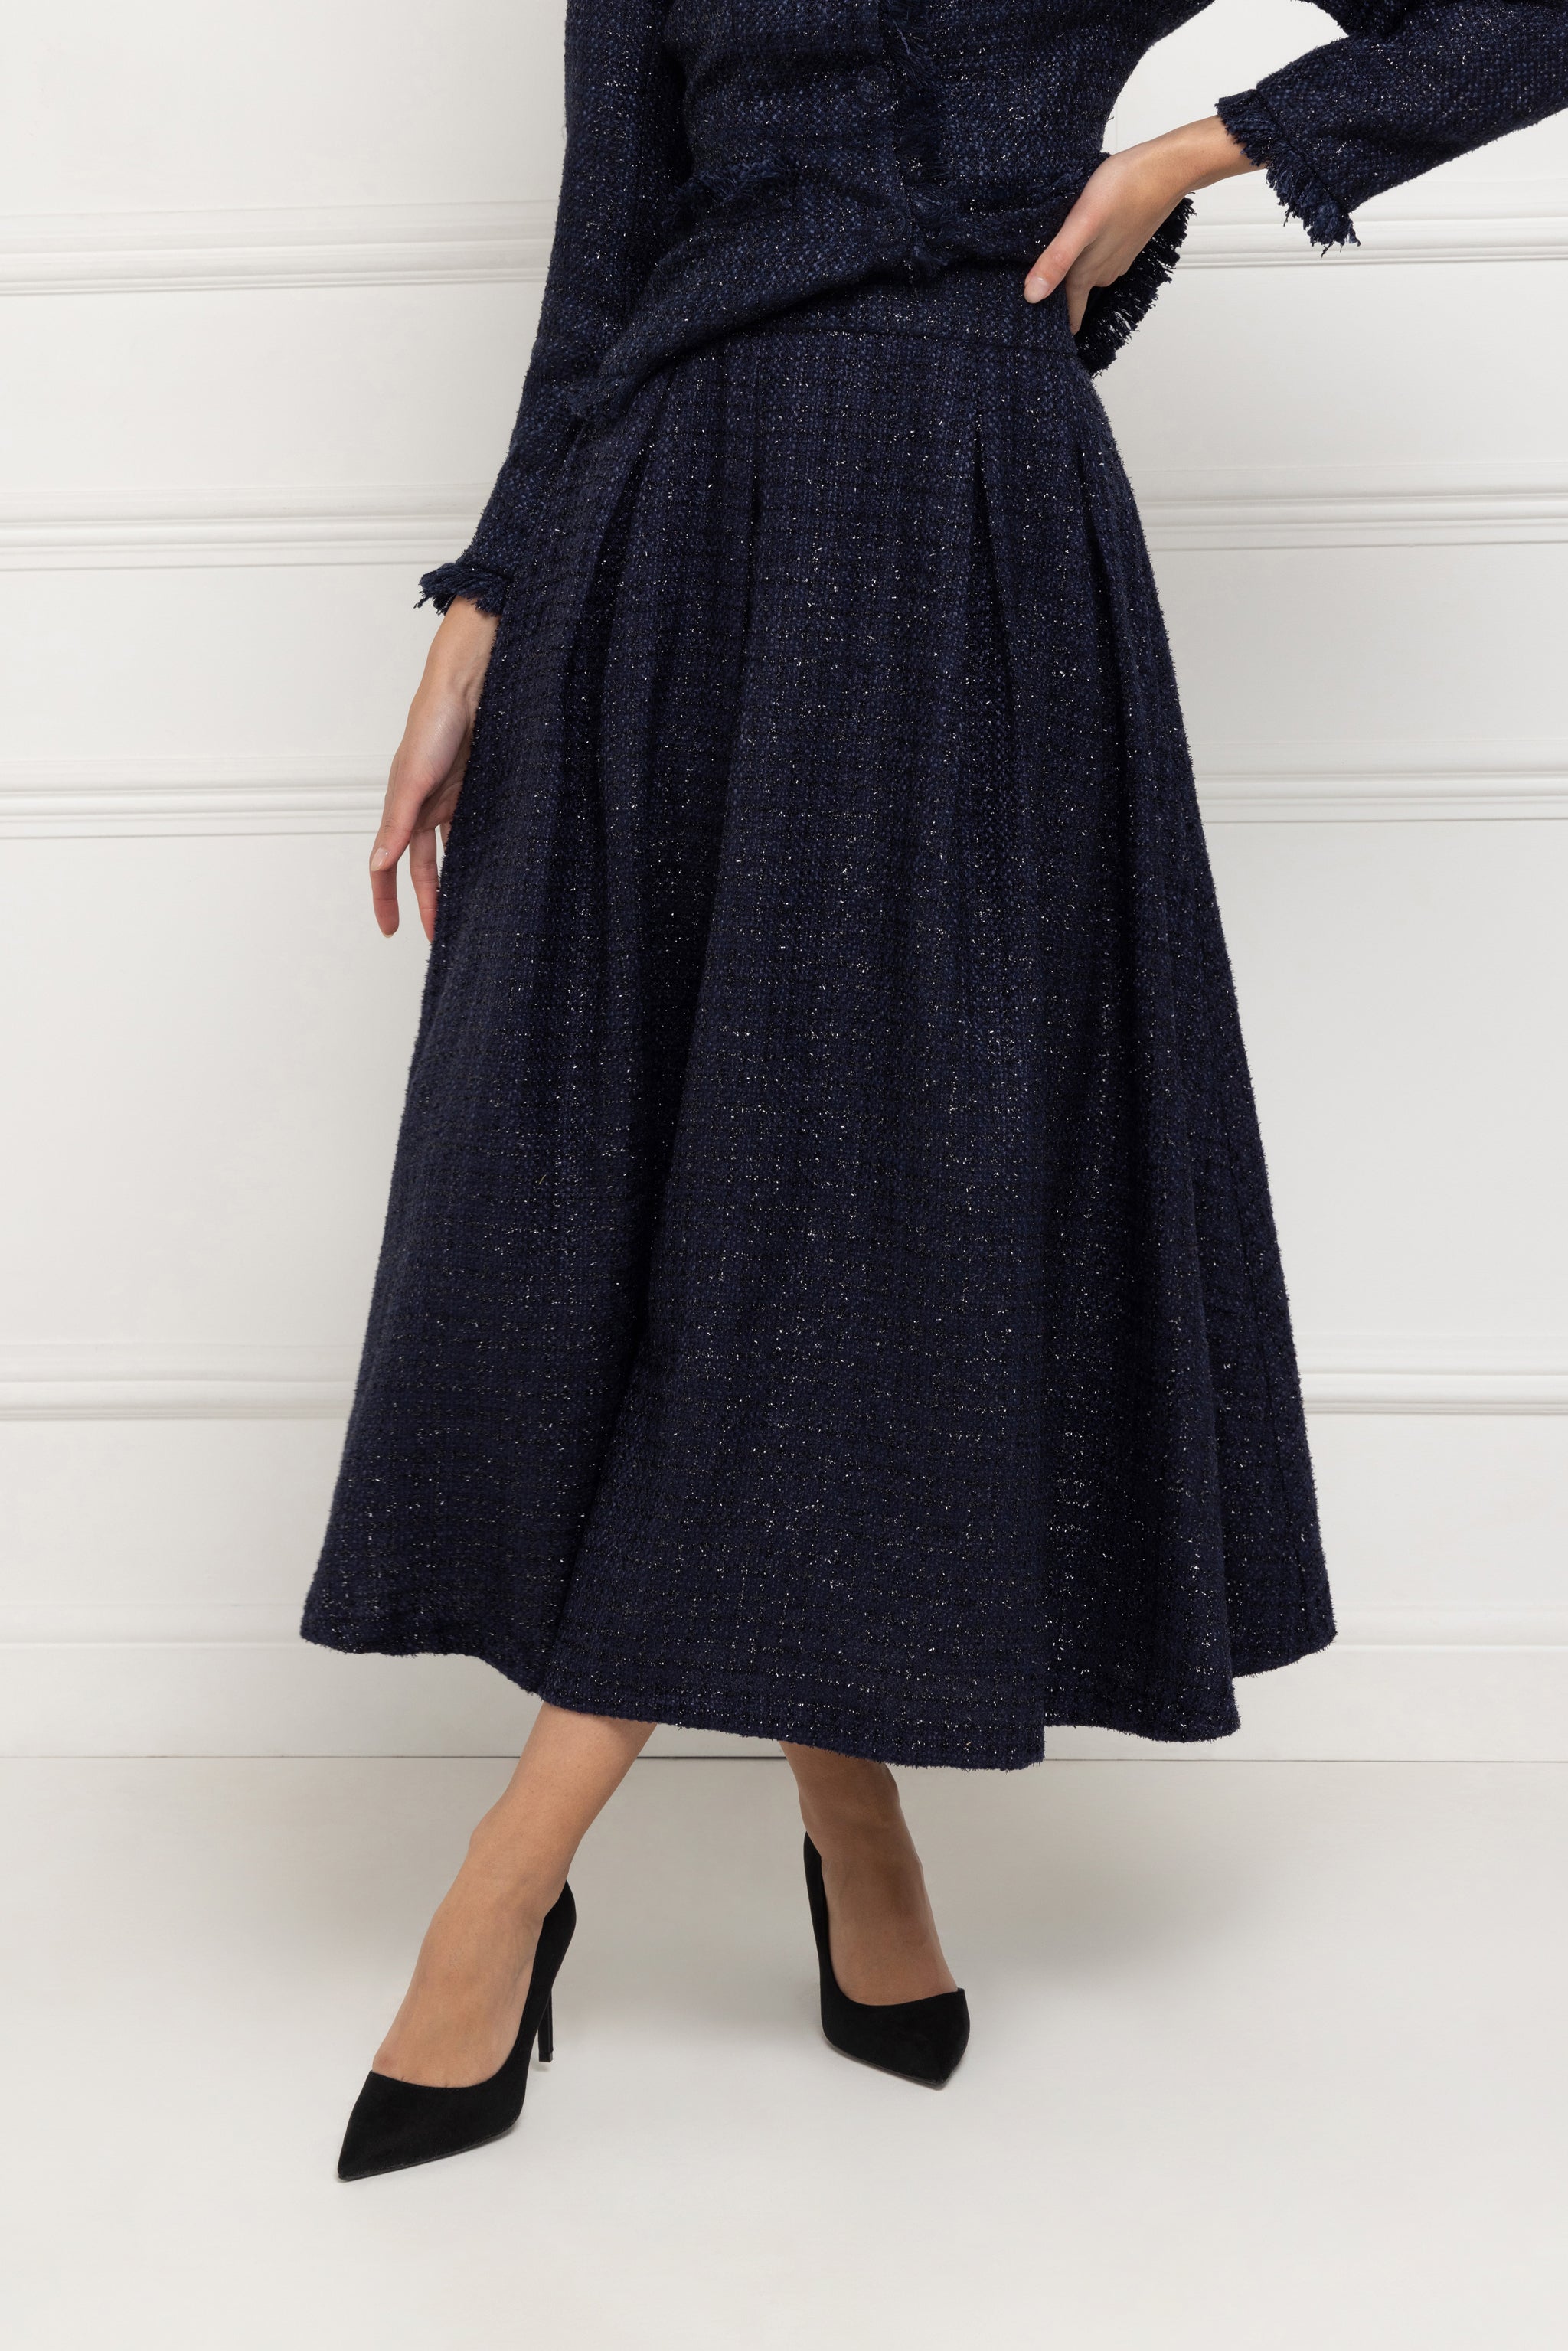 Tweed Full Midi Skirt (Midnight)